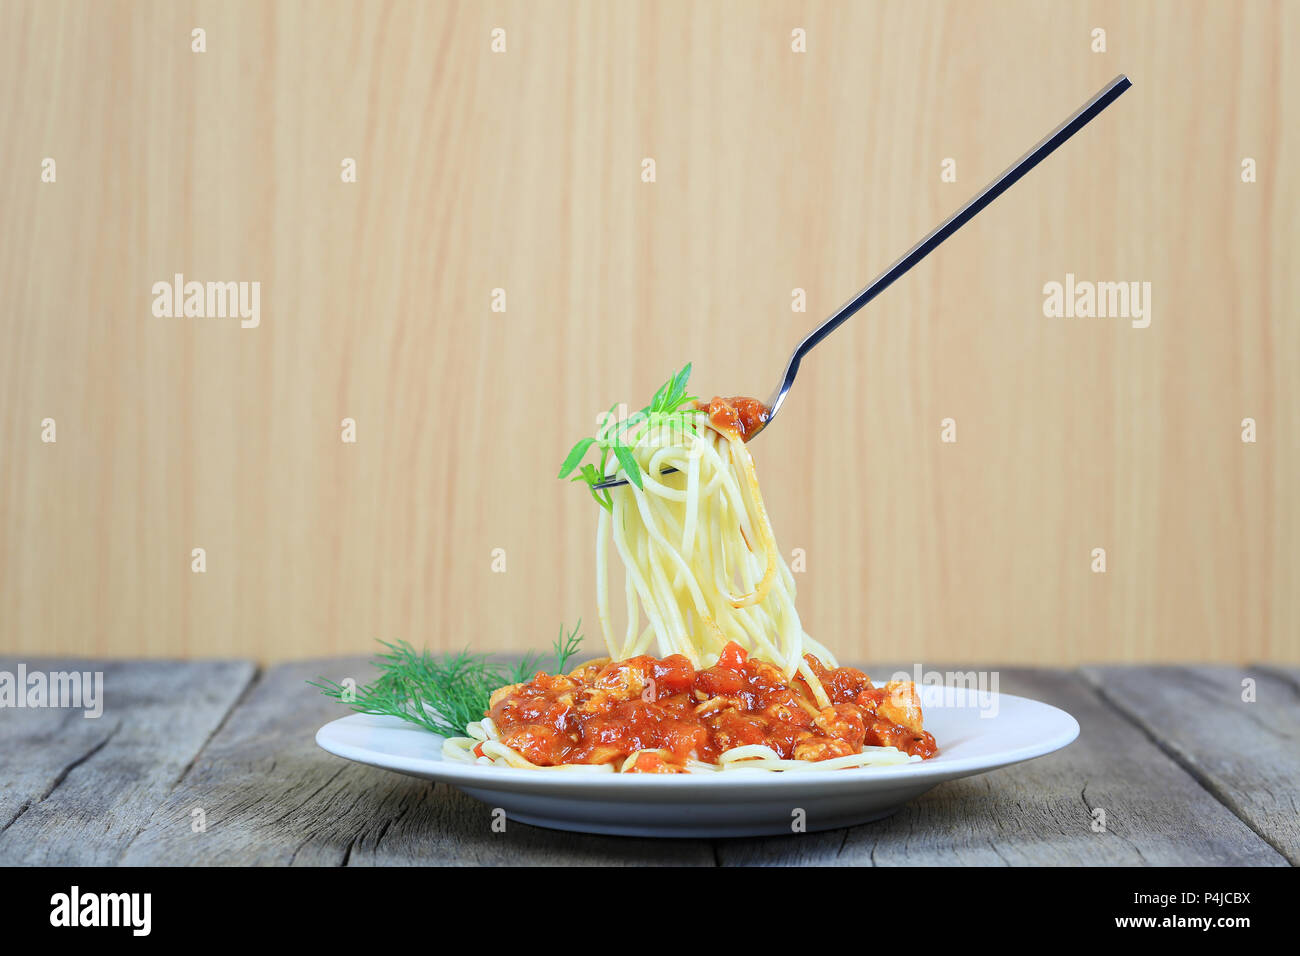 Spaghetti à la sauce tomate sur la fourche d'argent flottant dans le plat blanc sur plancher en bois,concept de manger de la bonne nourriture est les soins de santé. Banque D'Images